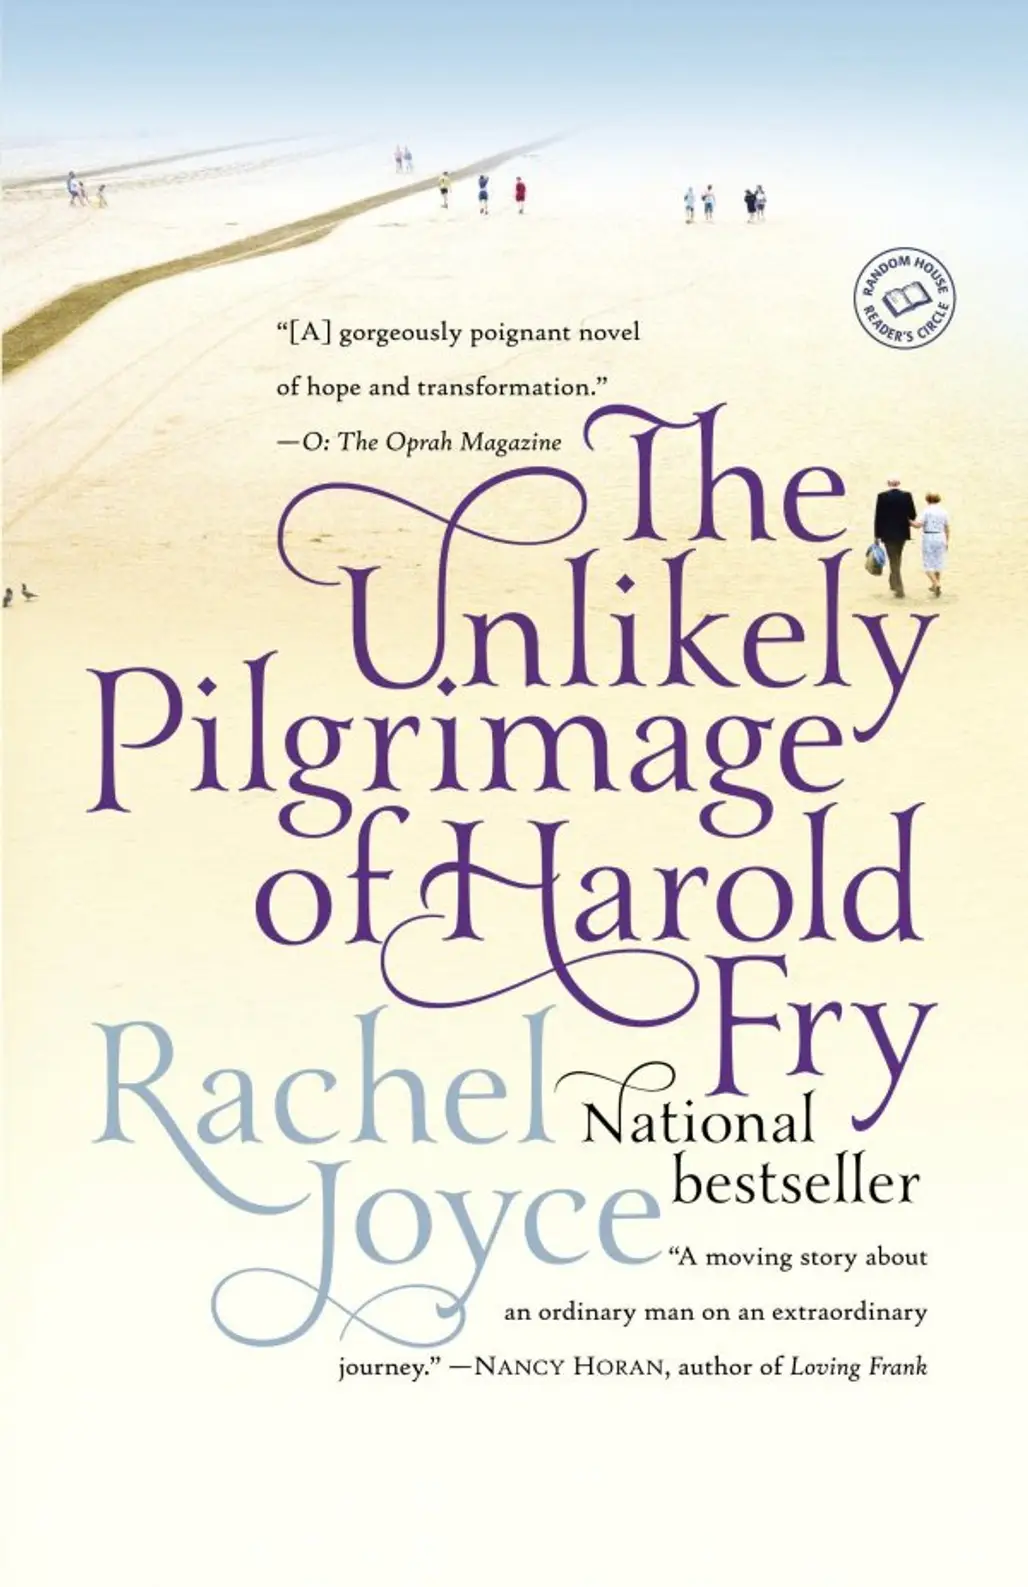 'the Unlikely Pilgrimage of Harold Fry' by Rachel Joyce